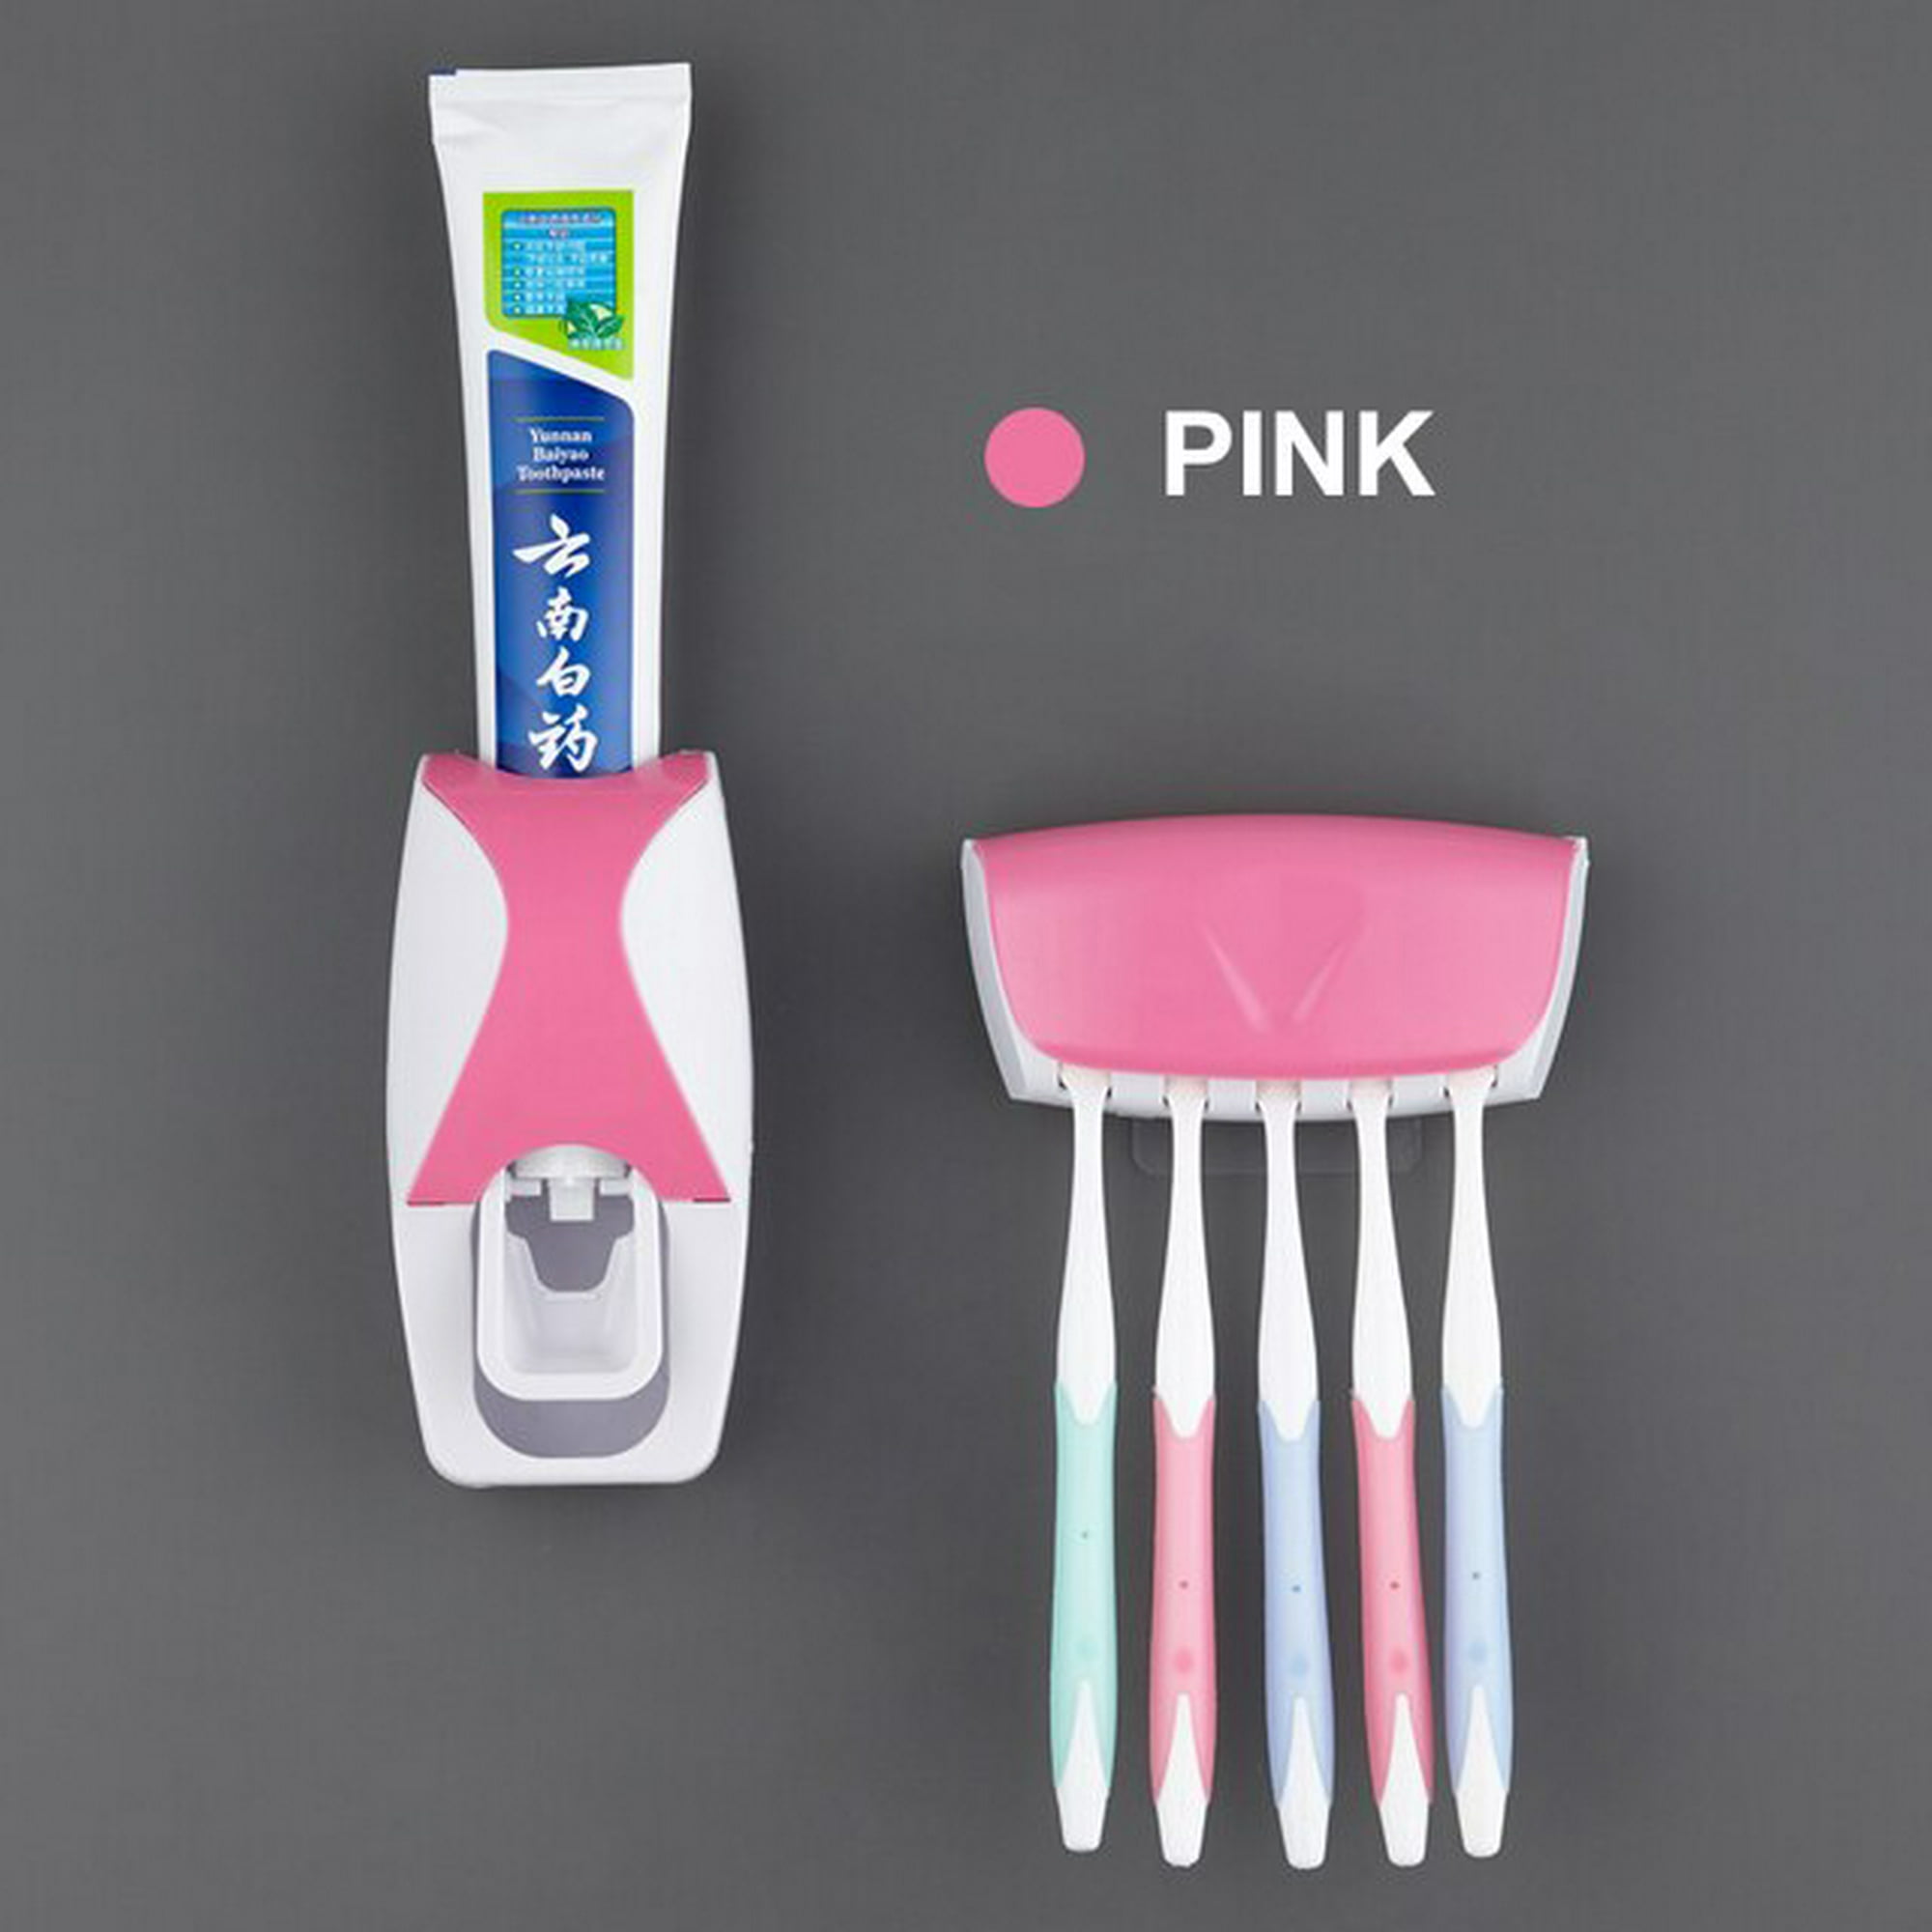 Dispensador de pasta de dientes, soporte para cepillos de dientes montado  en la pared, a prueba de polvo, manos libres, exprimidor automático de  pasta